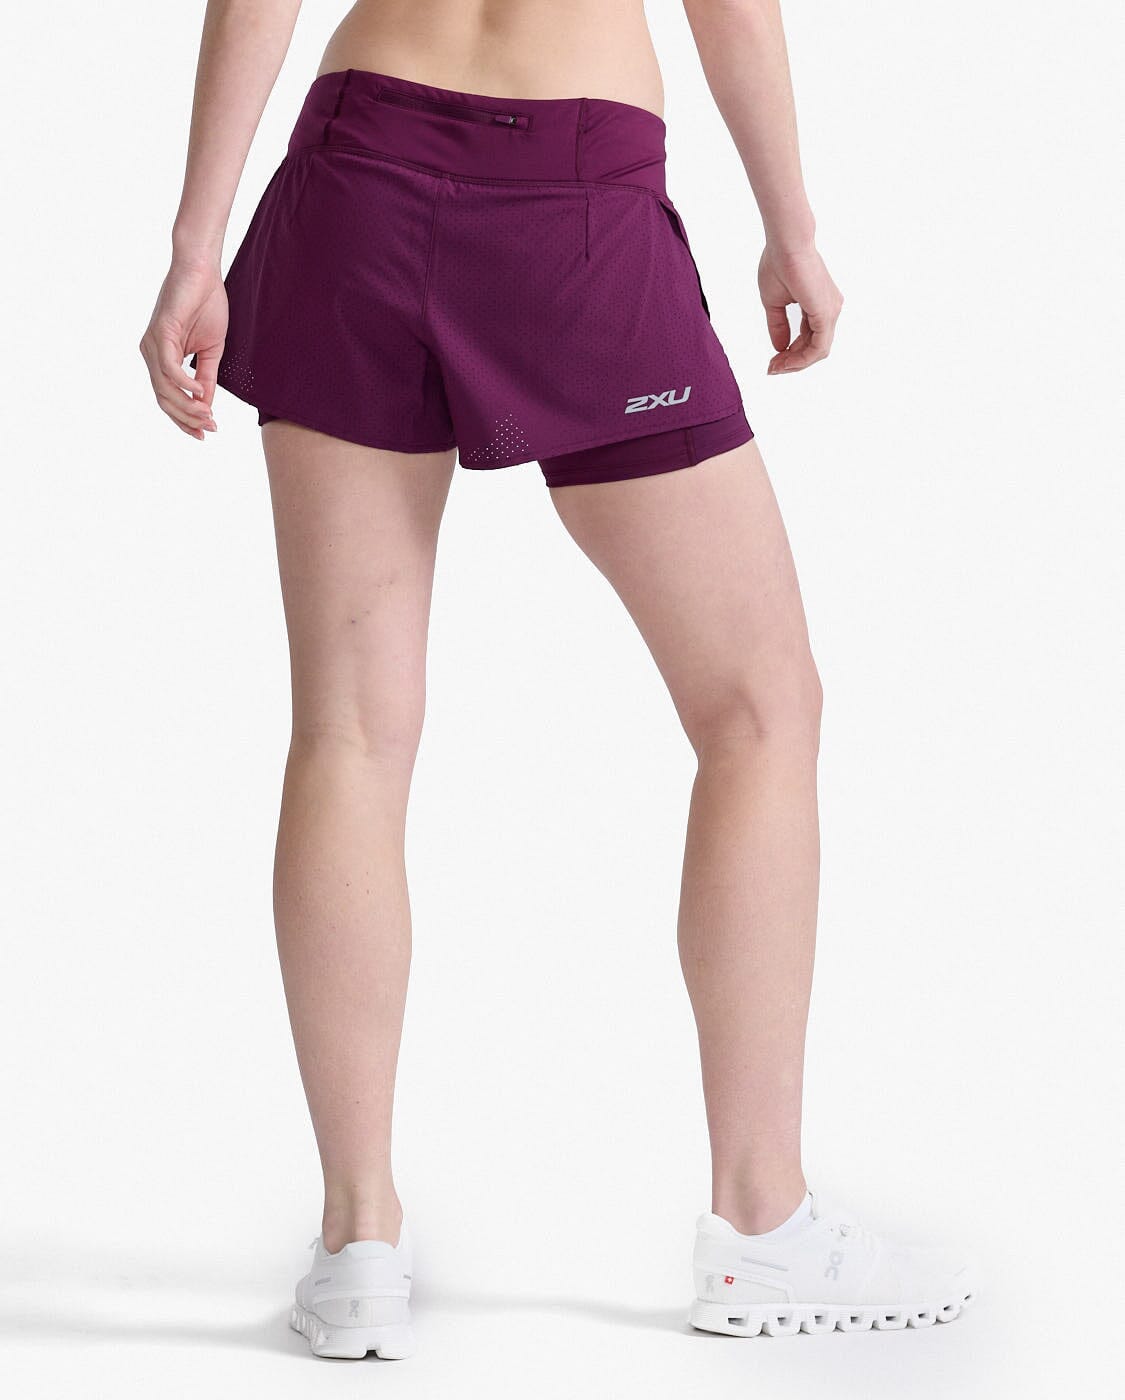 2XU Women's Aero 2-in-1 4" Inch Shorts WR6861B 